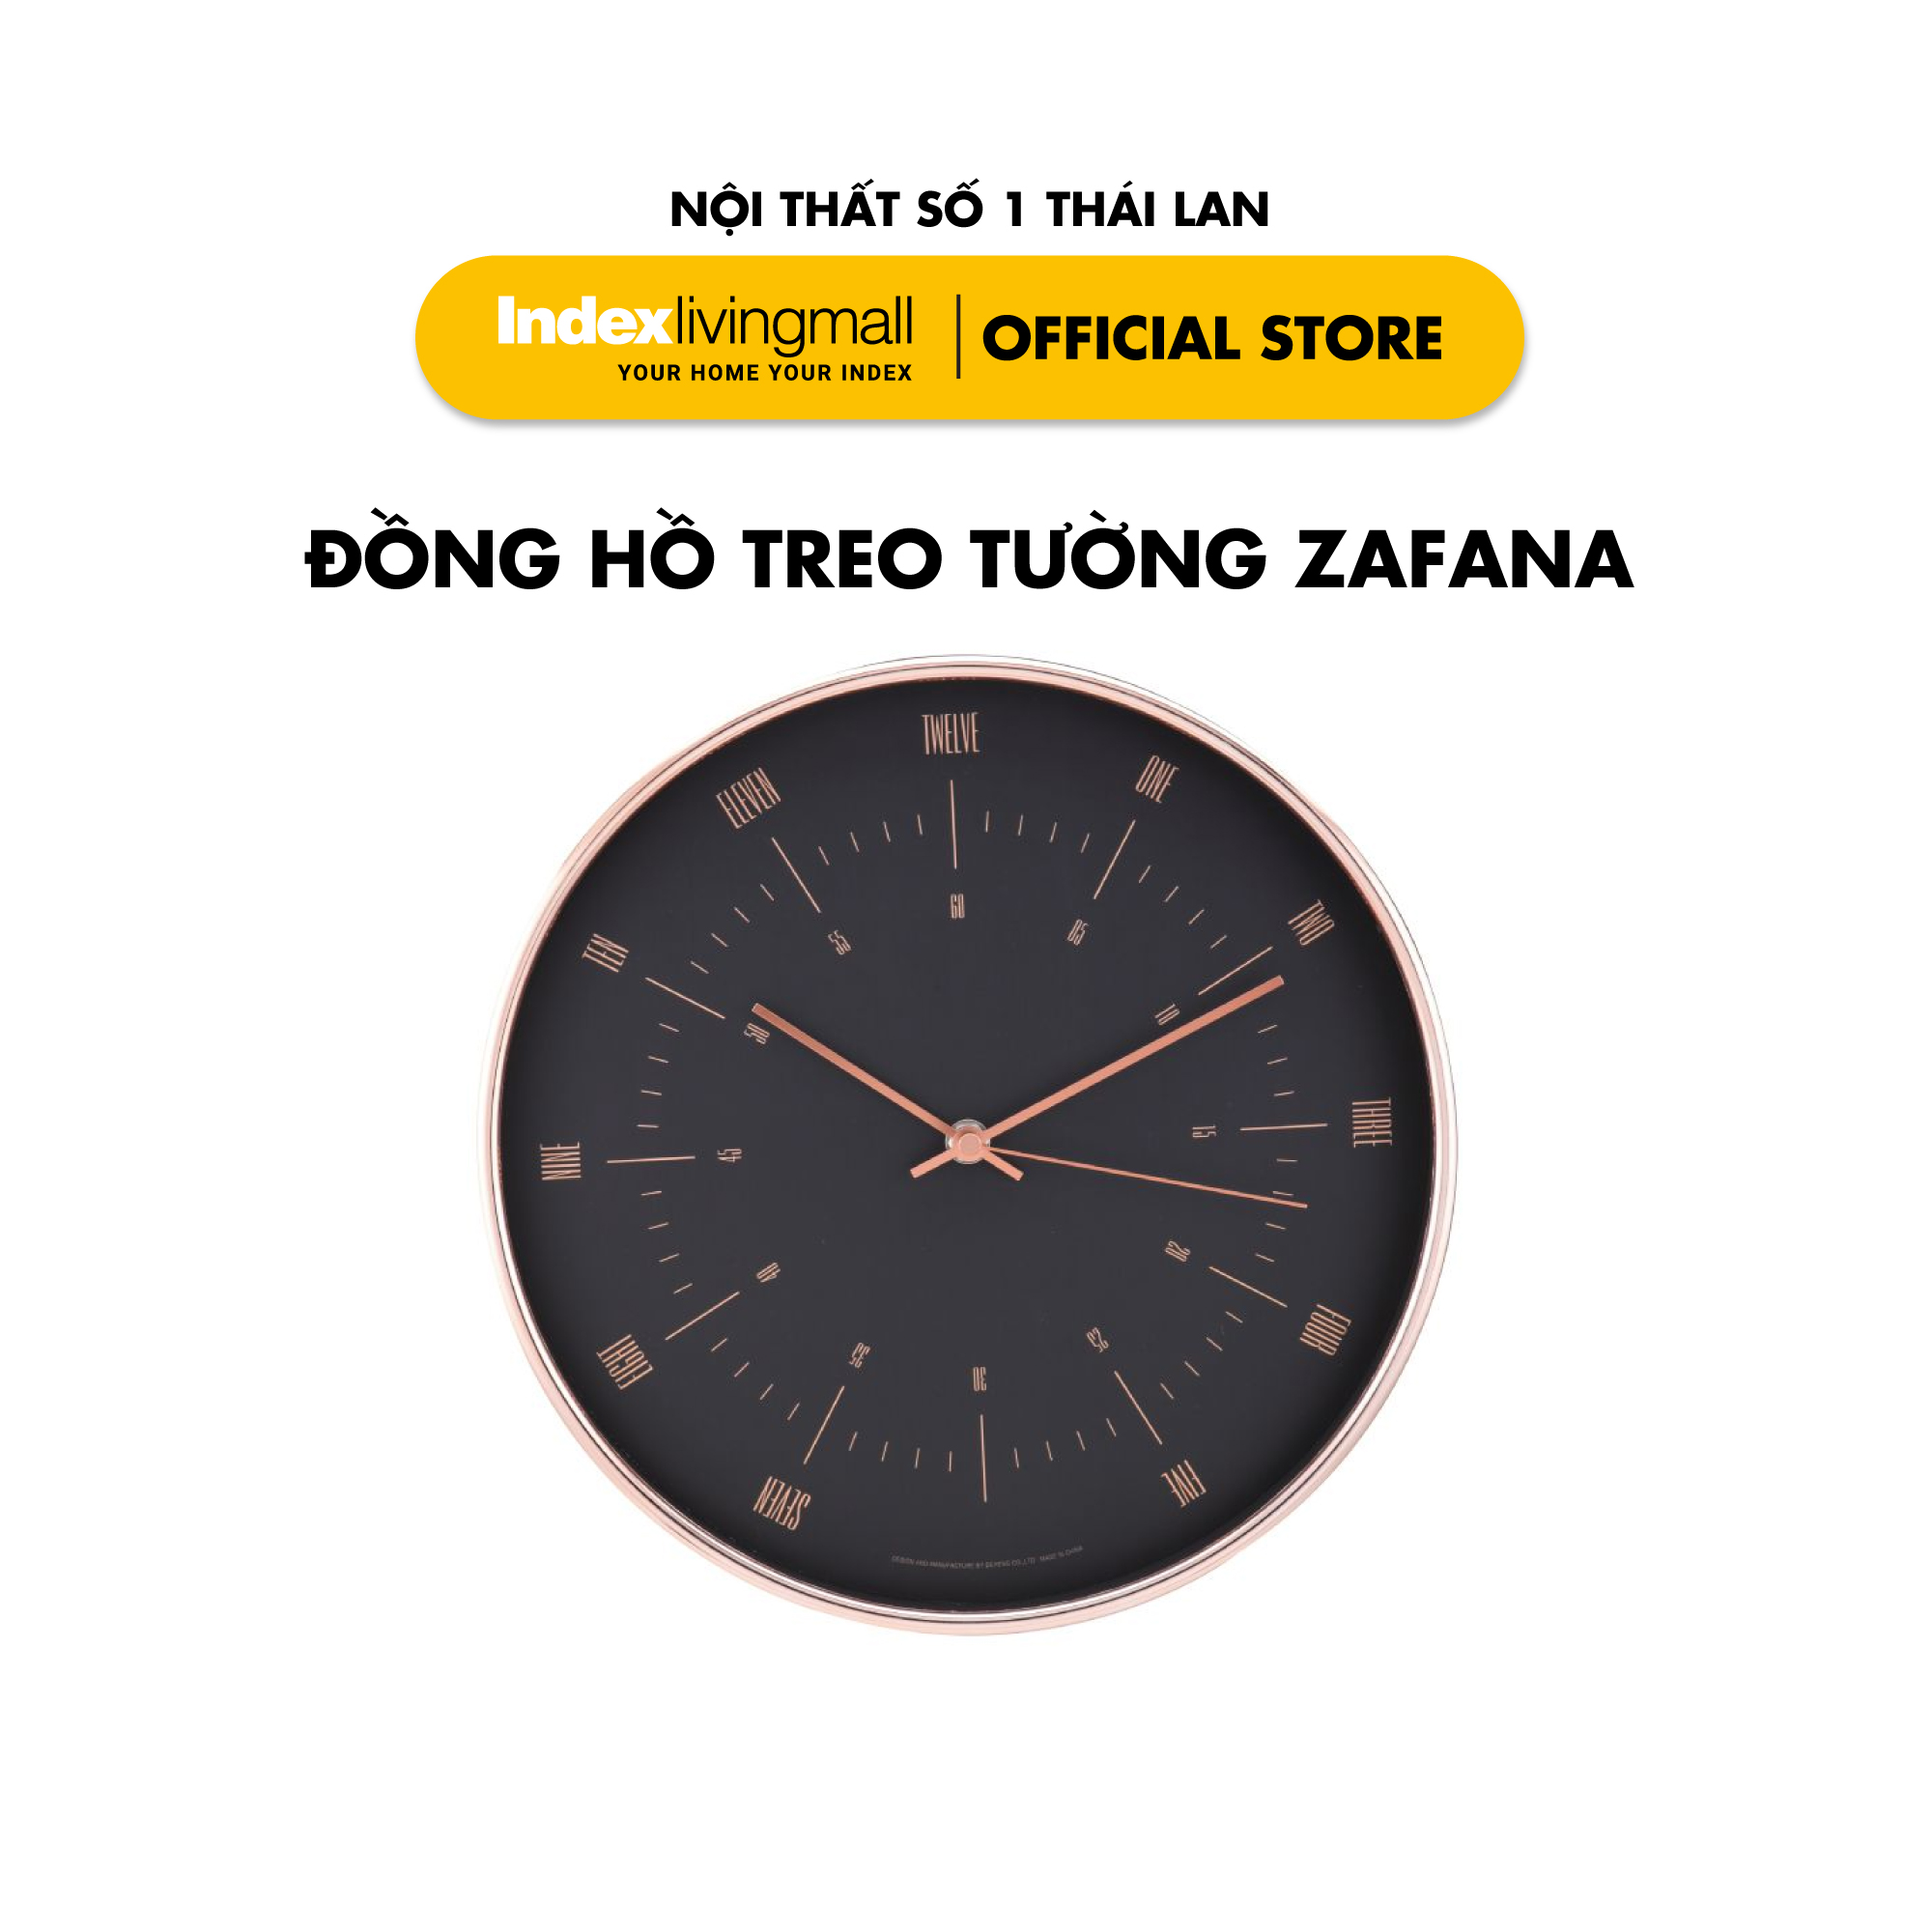 Đồng hồ treo tường trang trí nghệ thuật ZAFANA | Index Living Mall | Nhập khẩu Thái Lan